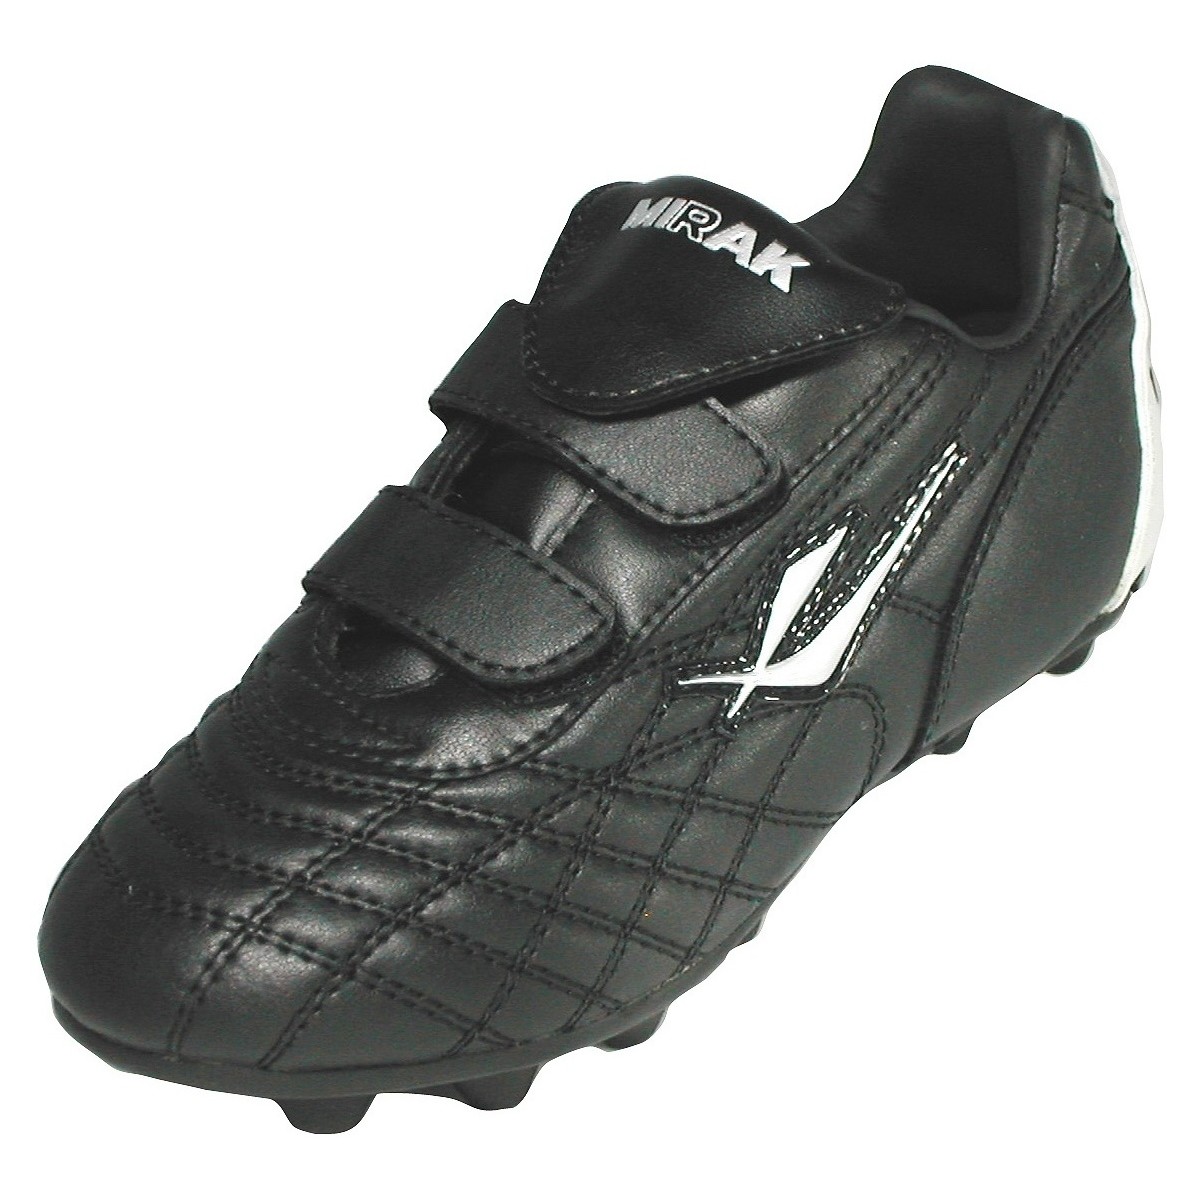 Chaussures Garçon Football Mirak Forward Velcro Moulded Noir